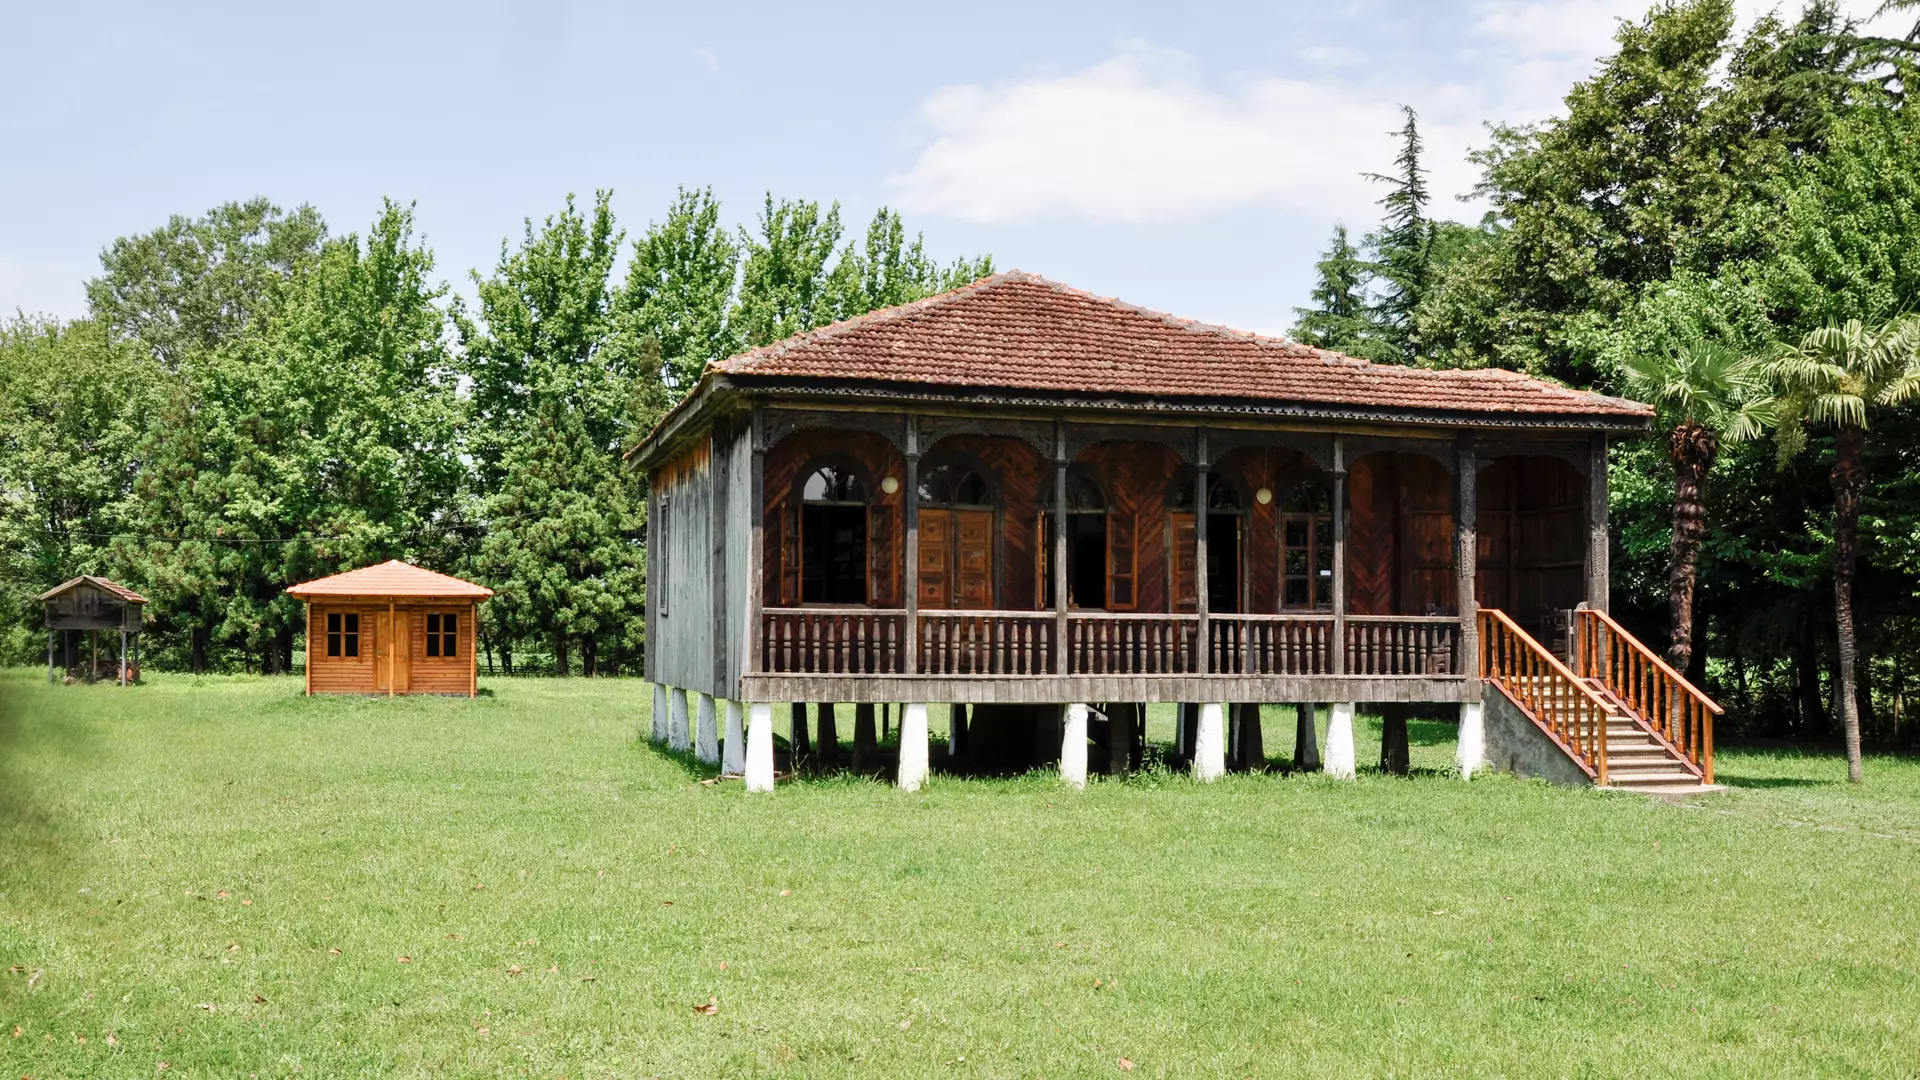 Konstantine Gamsakhurdia House Museum - A Landmark of Samegrelo